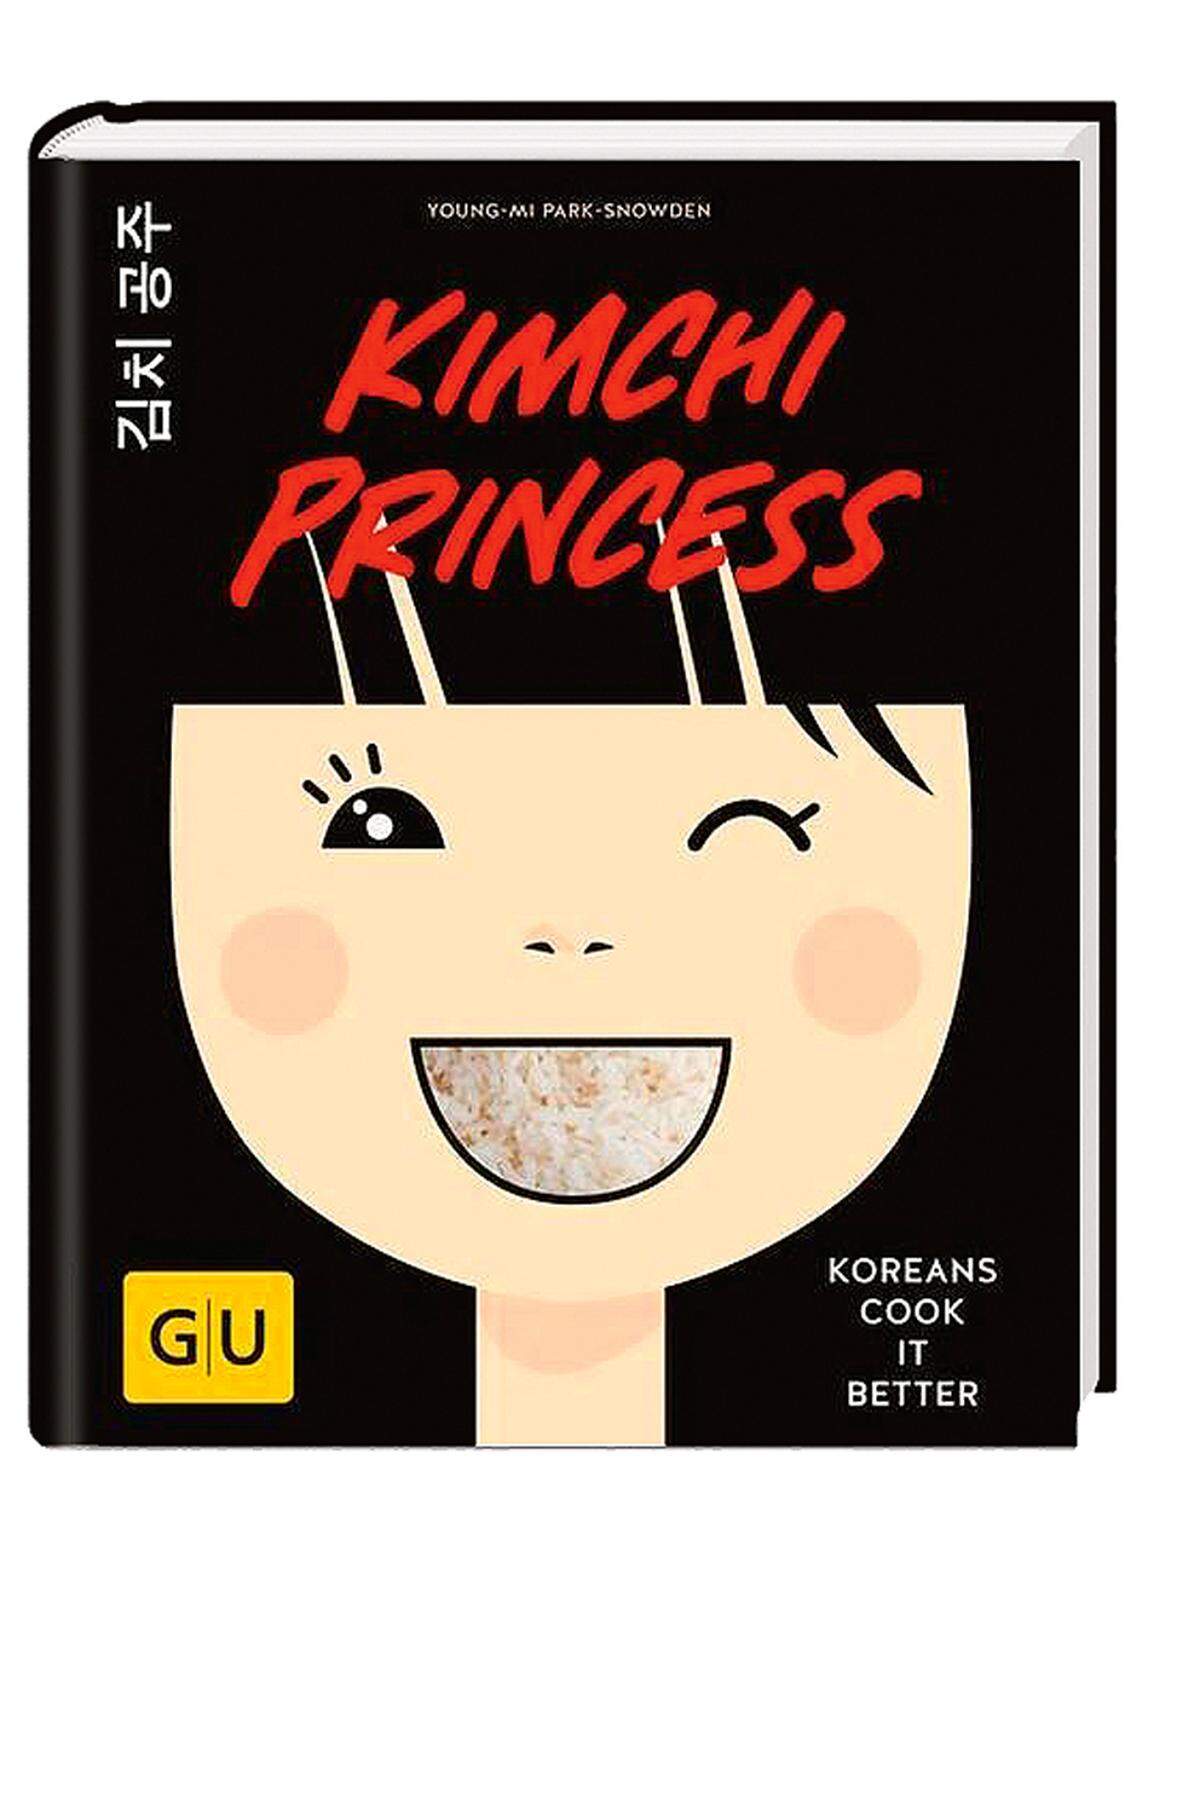  „Kimchi Princess“, 25,70 €.